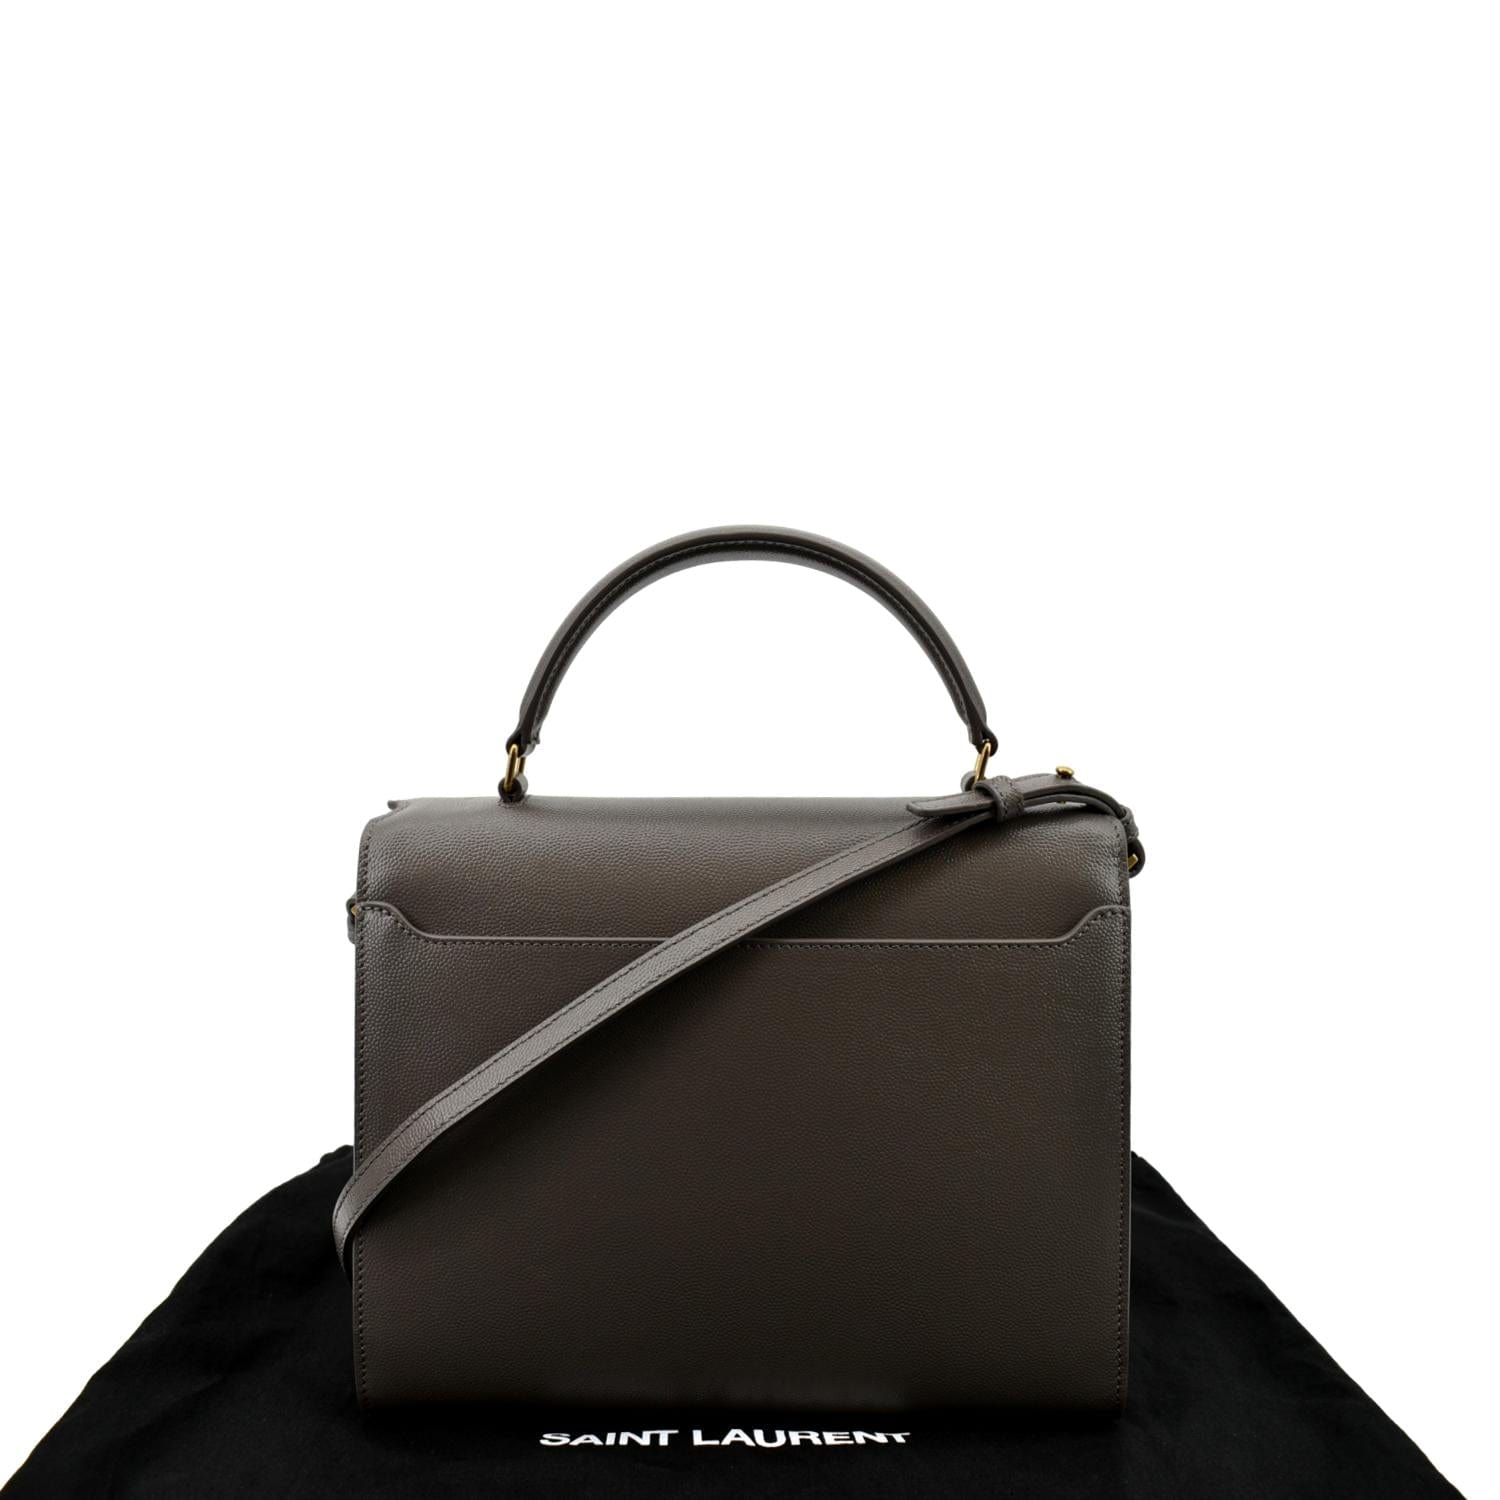 SAINT LAURENT Medium Cassandra Croc-effect Bag in Black